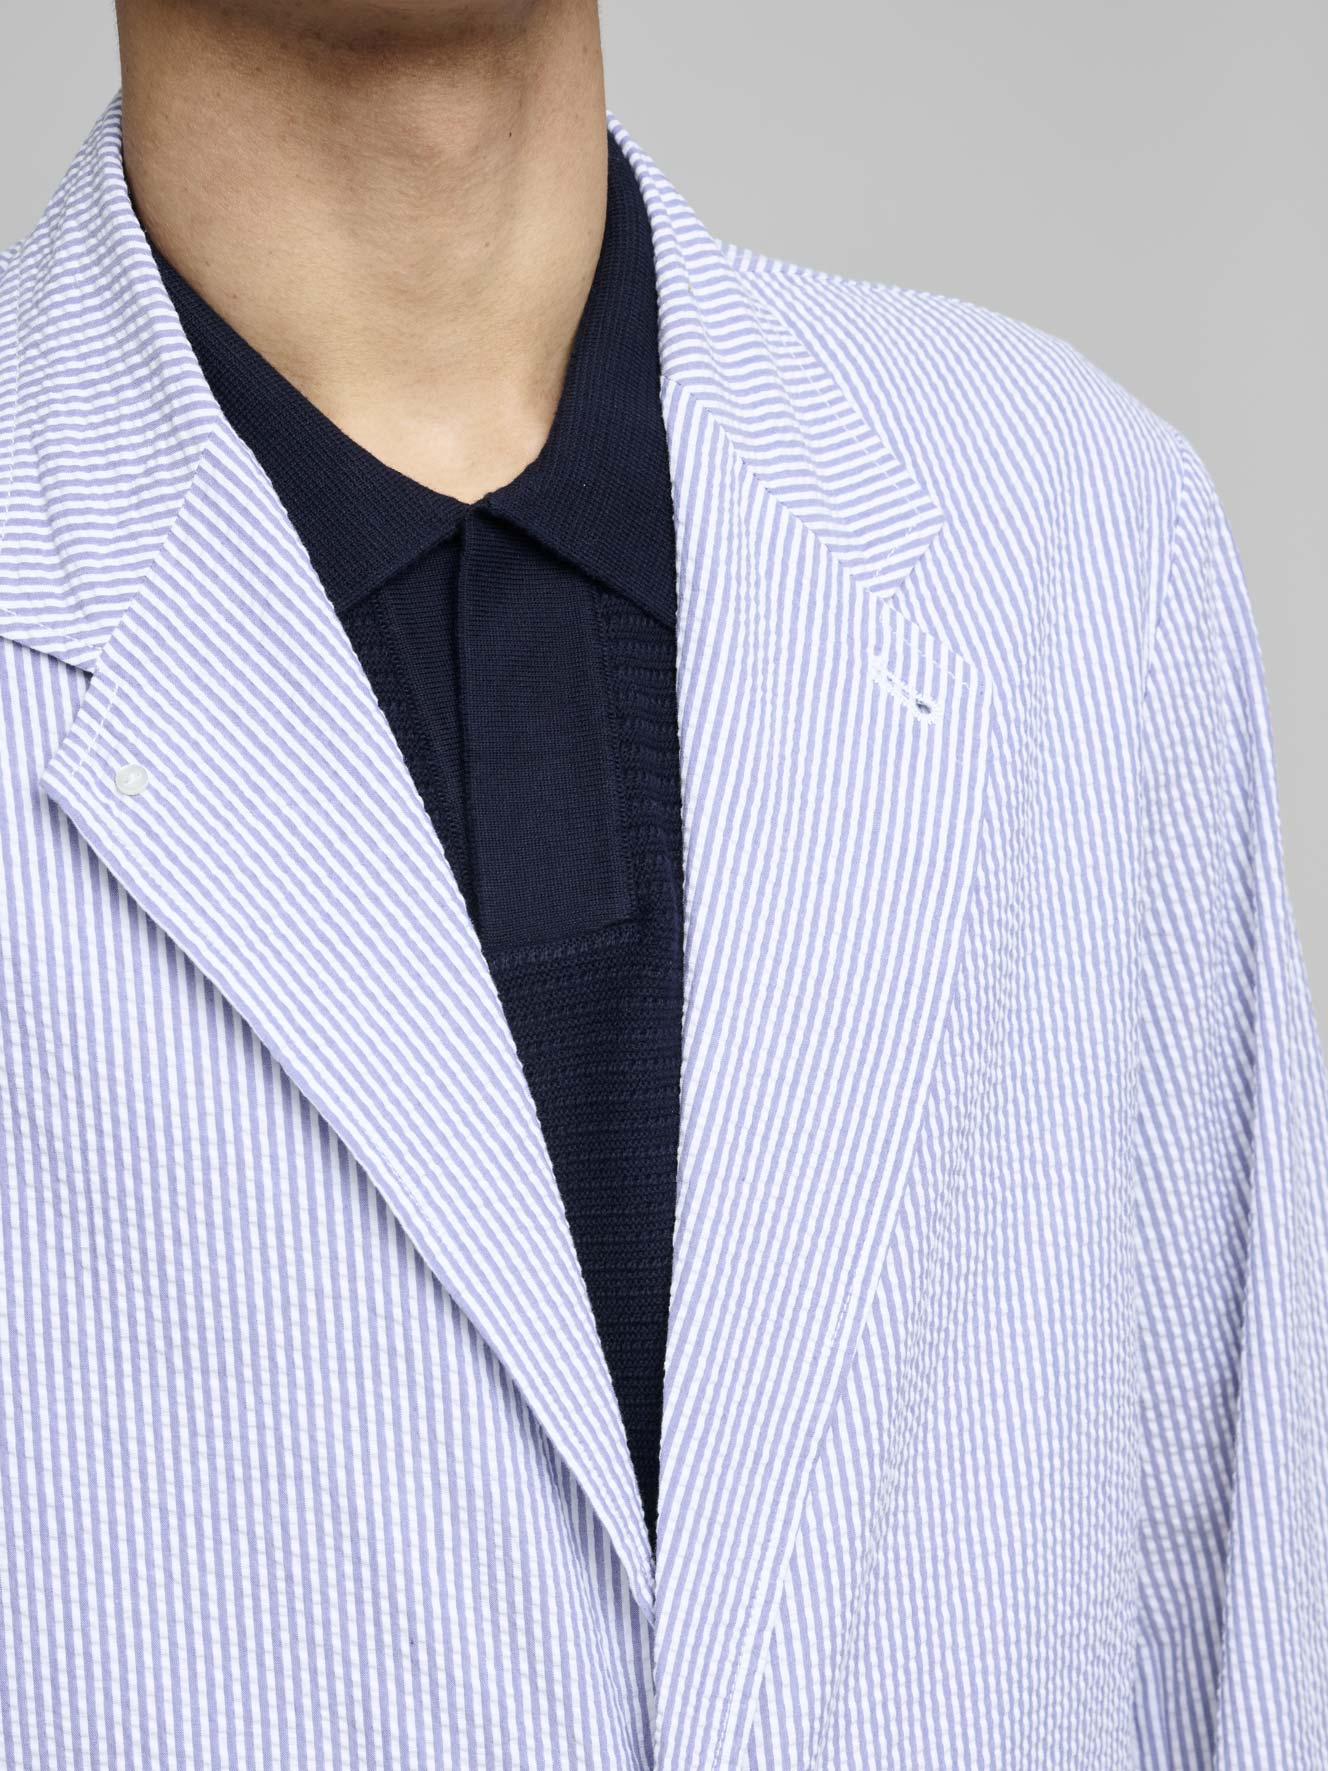 Seersucker Club Jacket, Blue/White Stripe